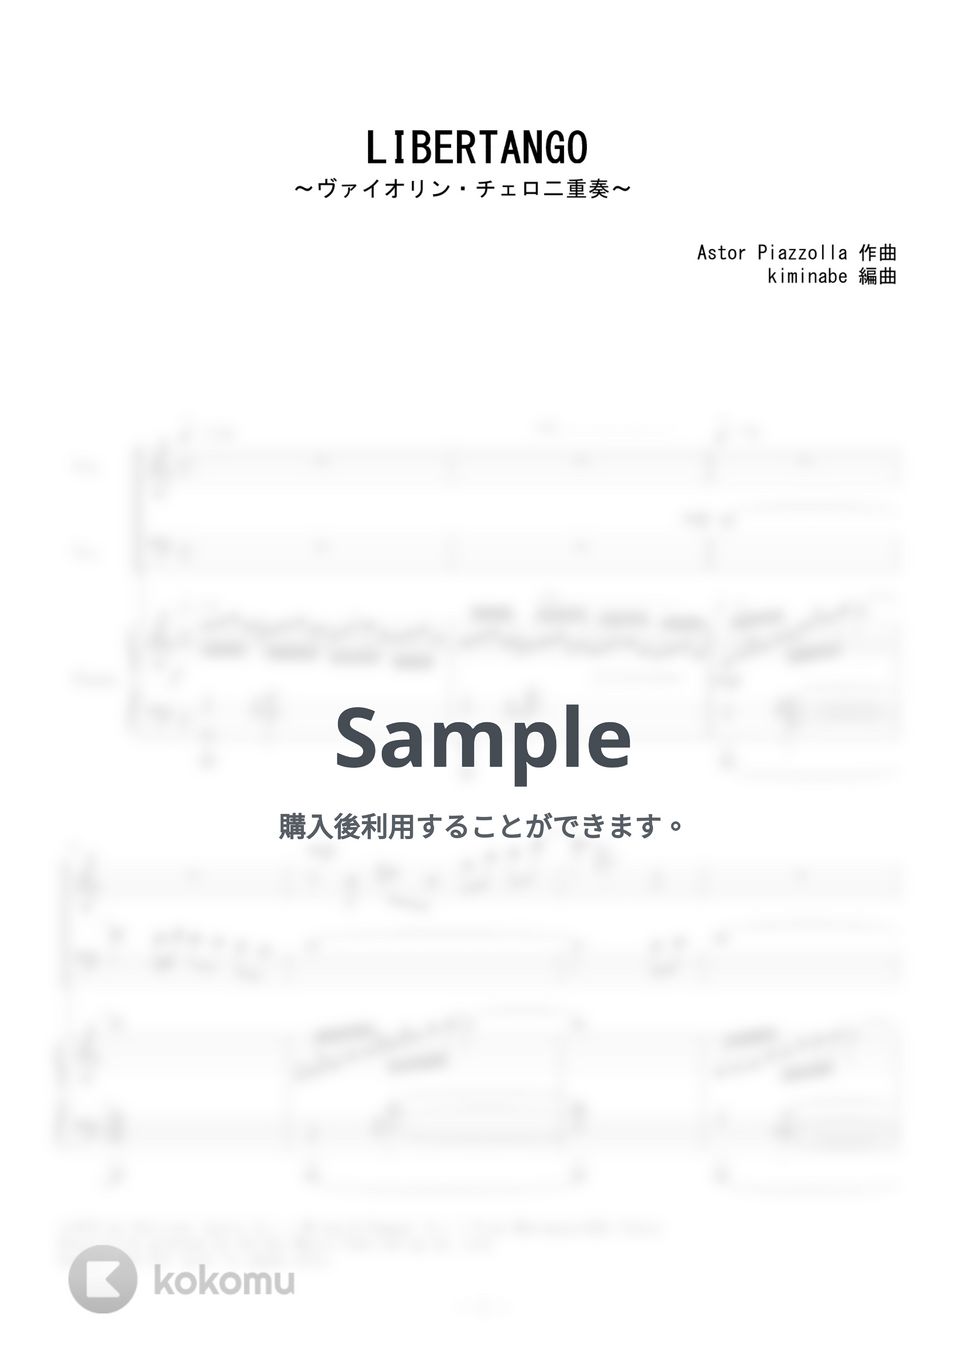 ピアソラ - LIBERTANGO (ヴァイオリン・チェロ二重奏) by kiminabe